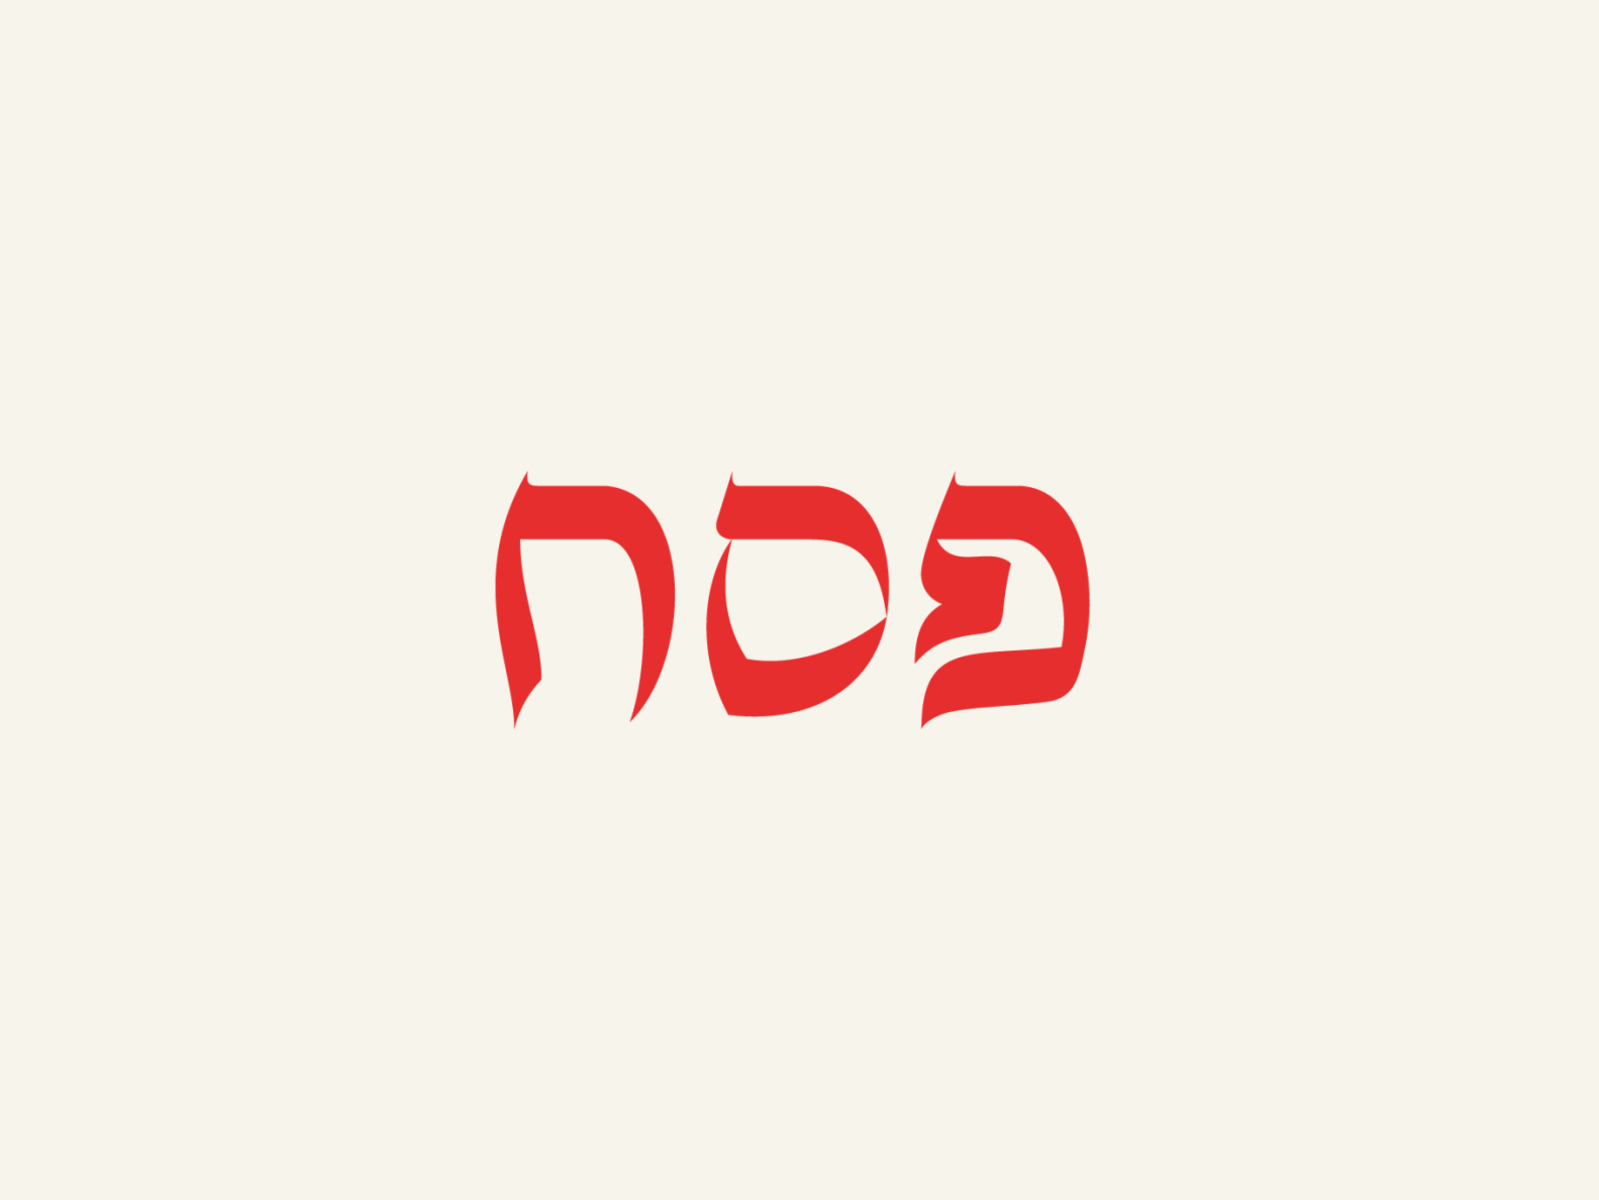 ancient hebrew font